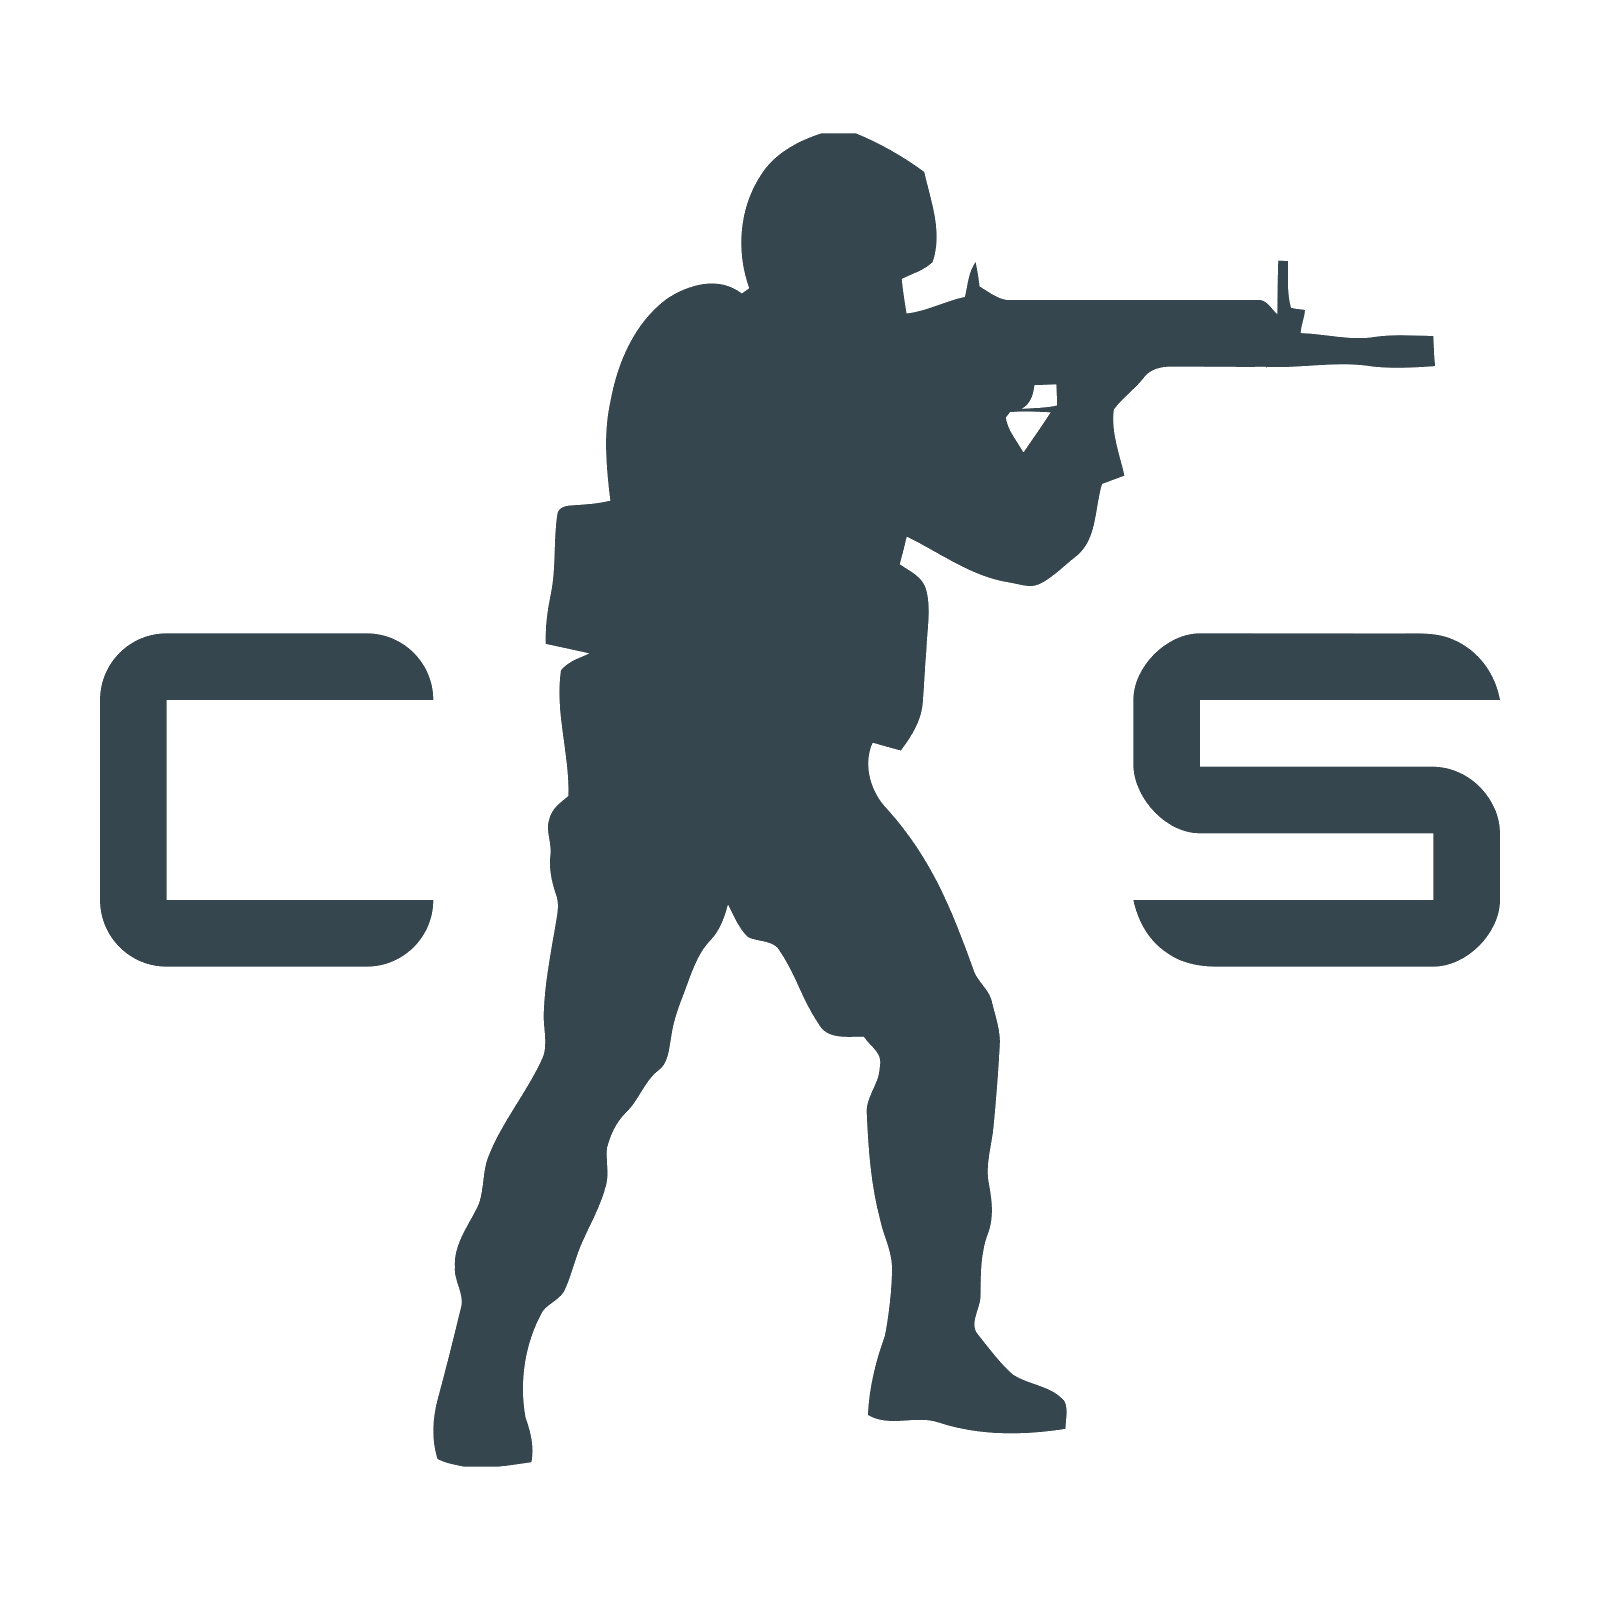 Counter-Strike Logo - Counter Strike logo PNG